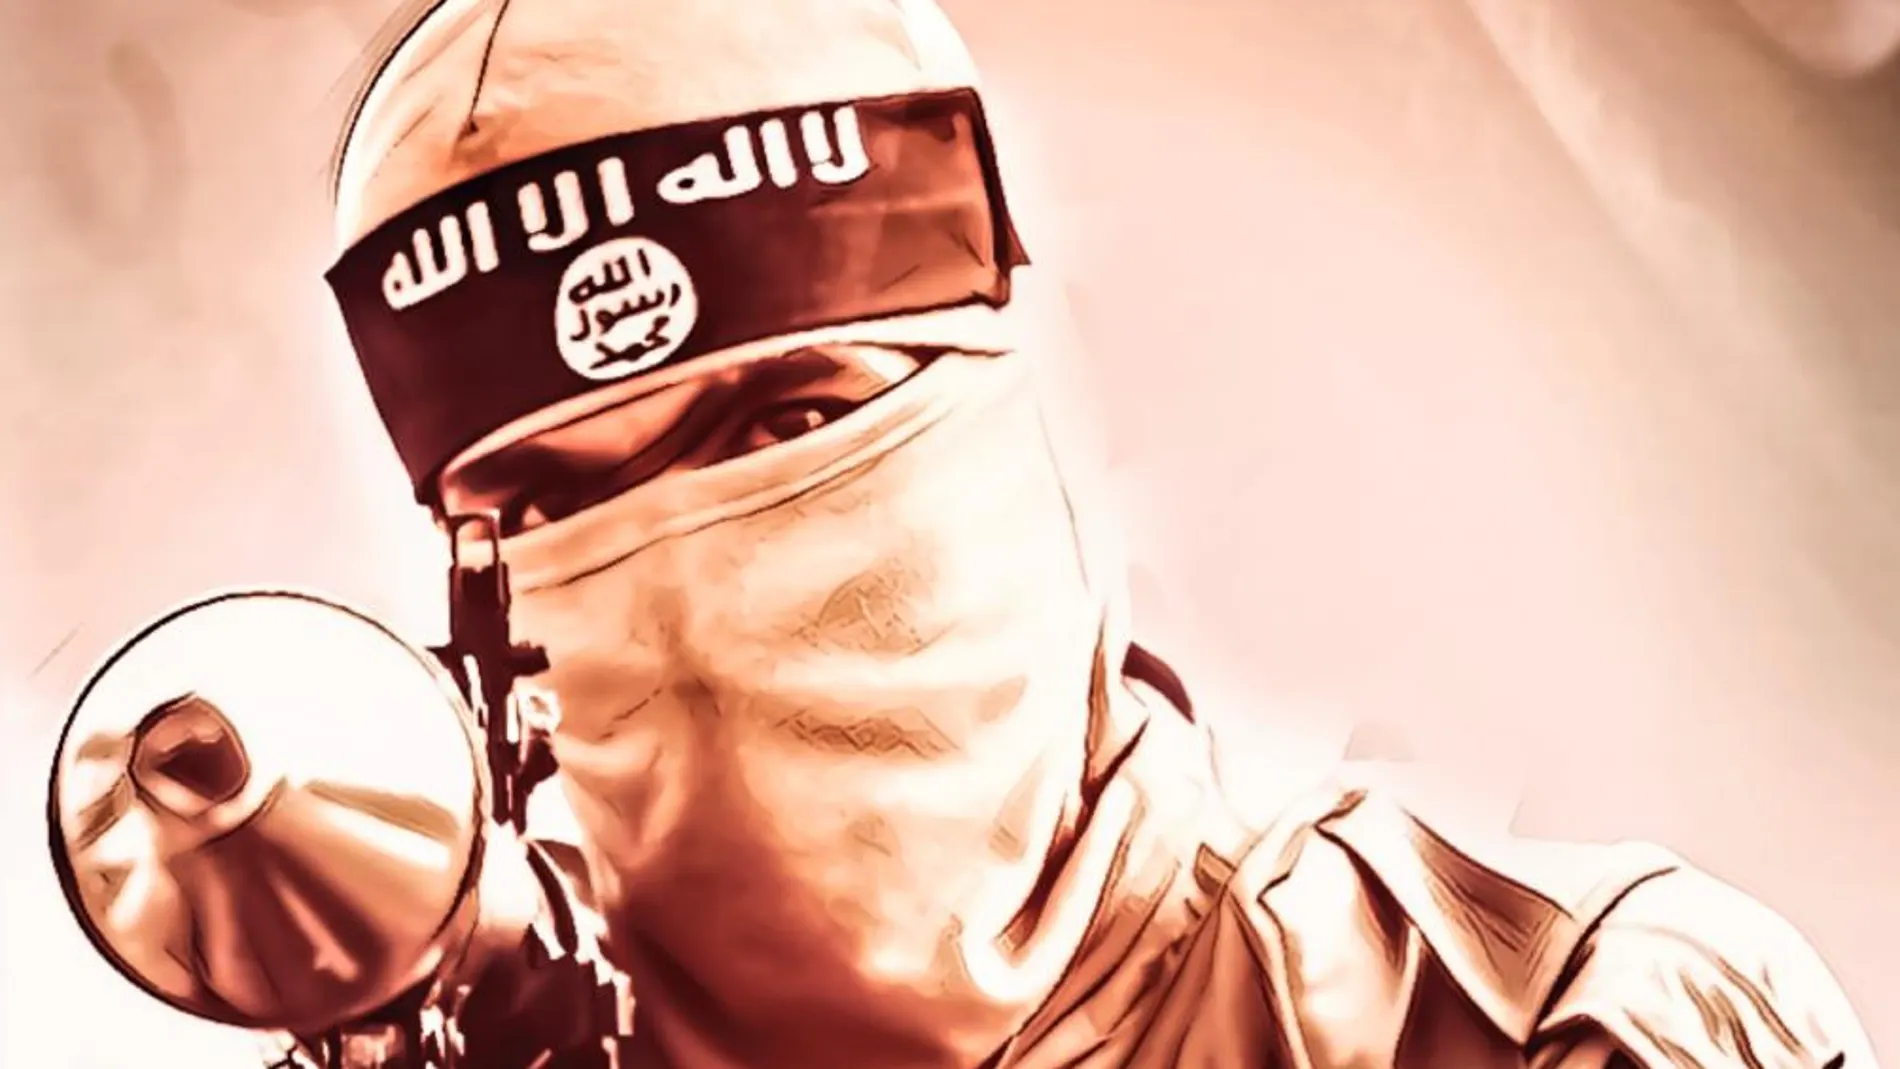 La revista de Daesh destinada a los "jóvenes del Califato"incluye imágenes para animarles a cometer atentados